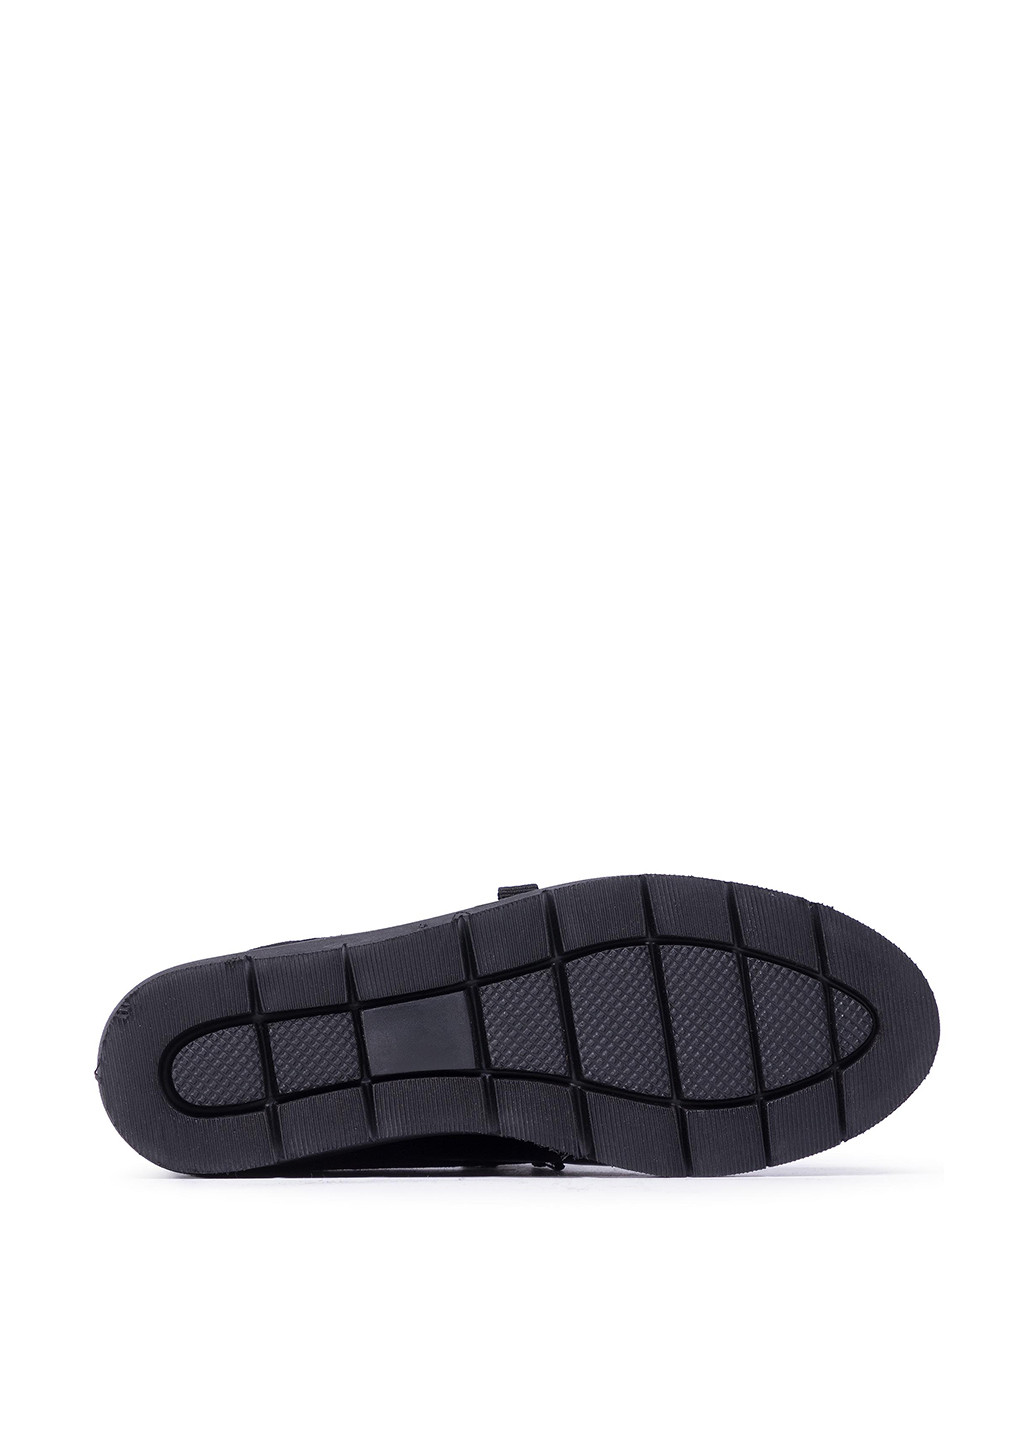 Туфлі WI16-CORA3-01 Lasocki оксфорди однотонні чорні кежуали